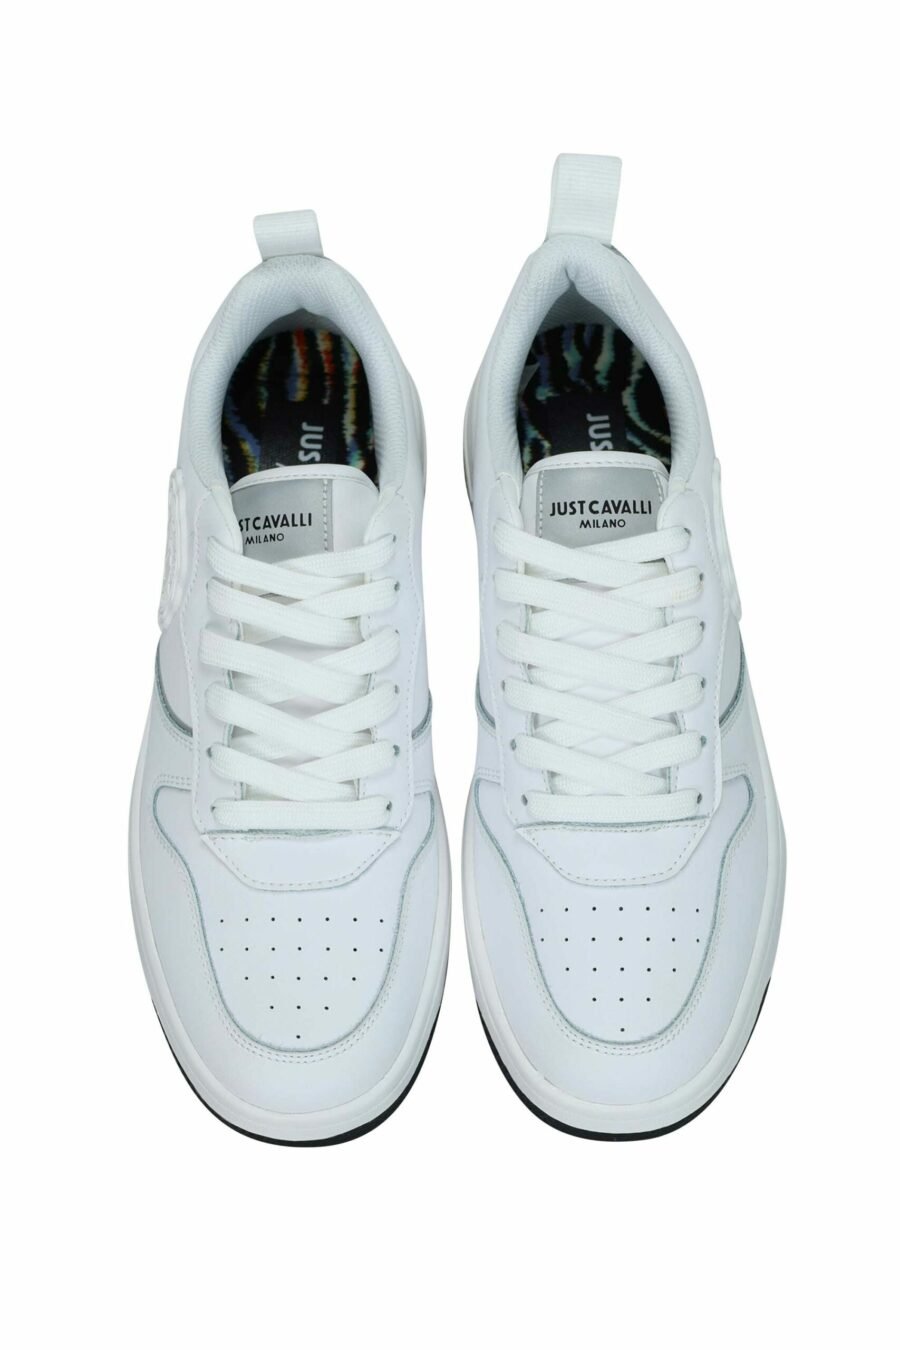 Zapatillas blancas con minilogo circular "c" monocromático - 8052672739735 5 scaled